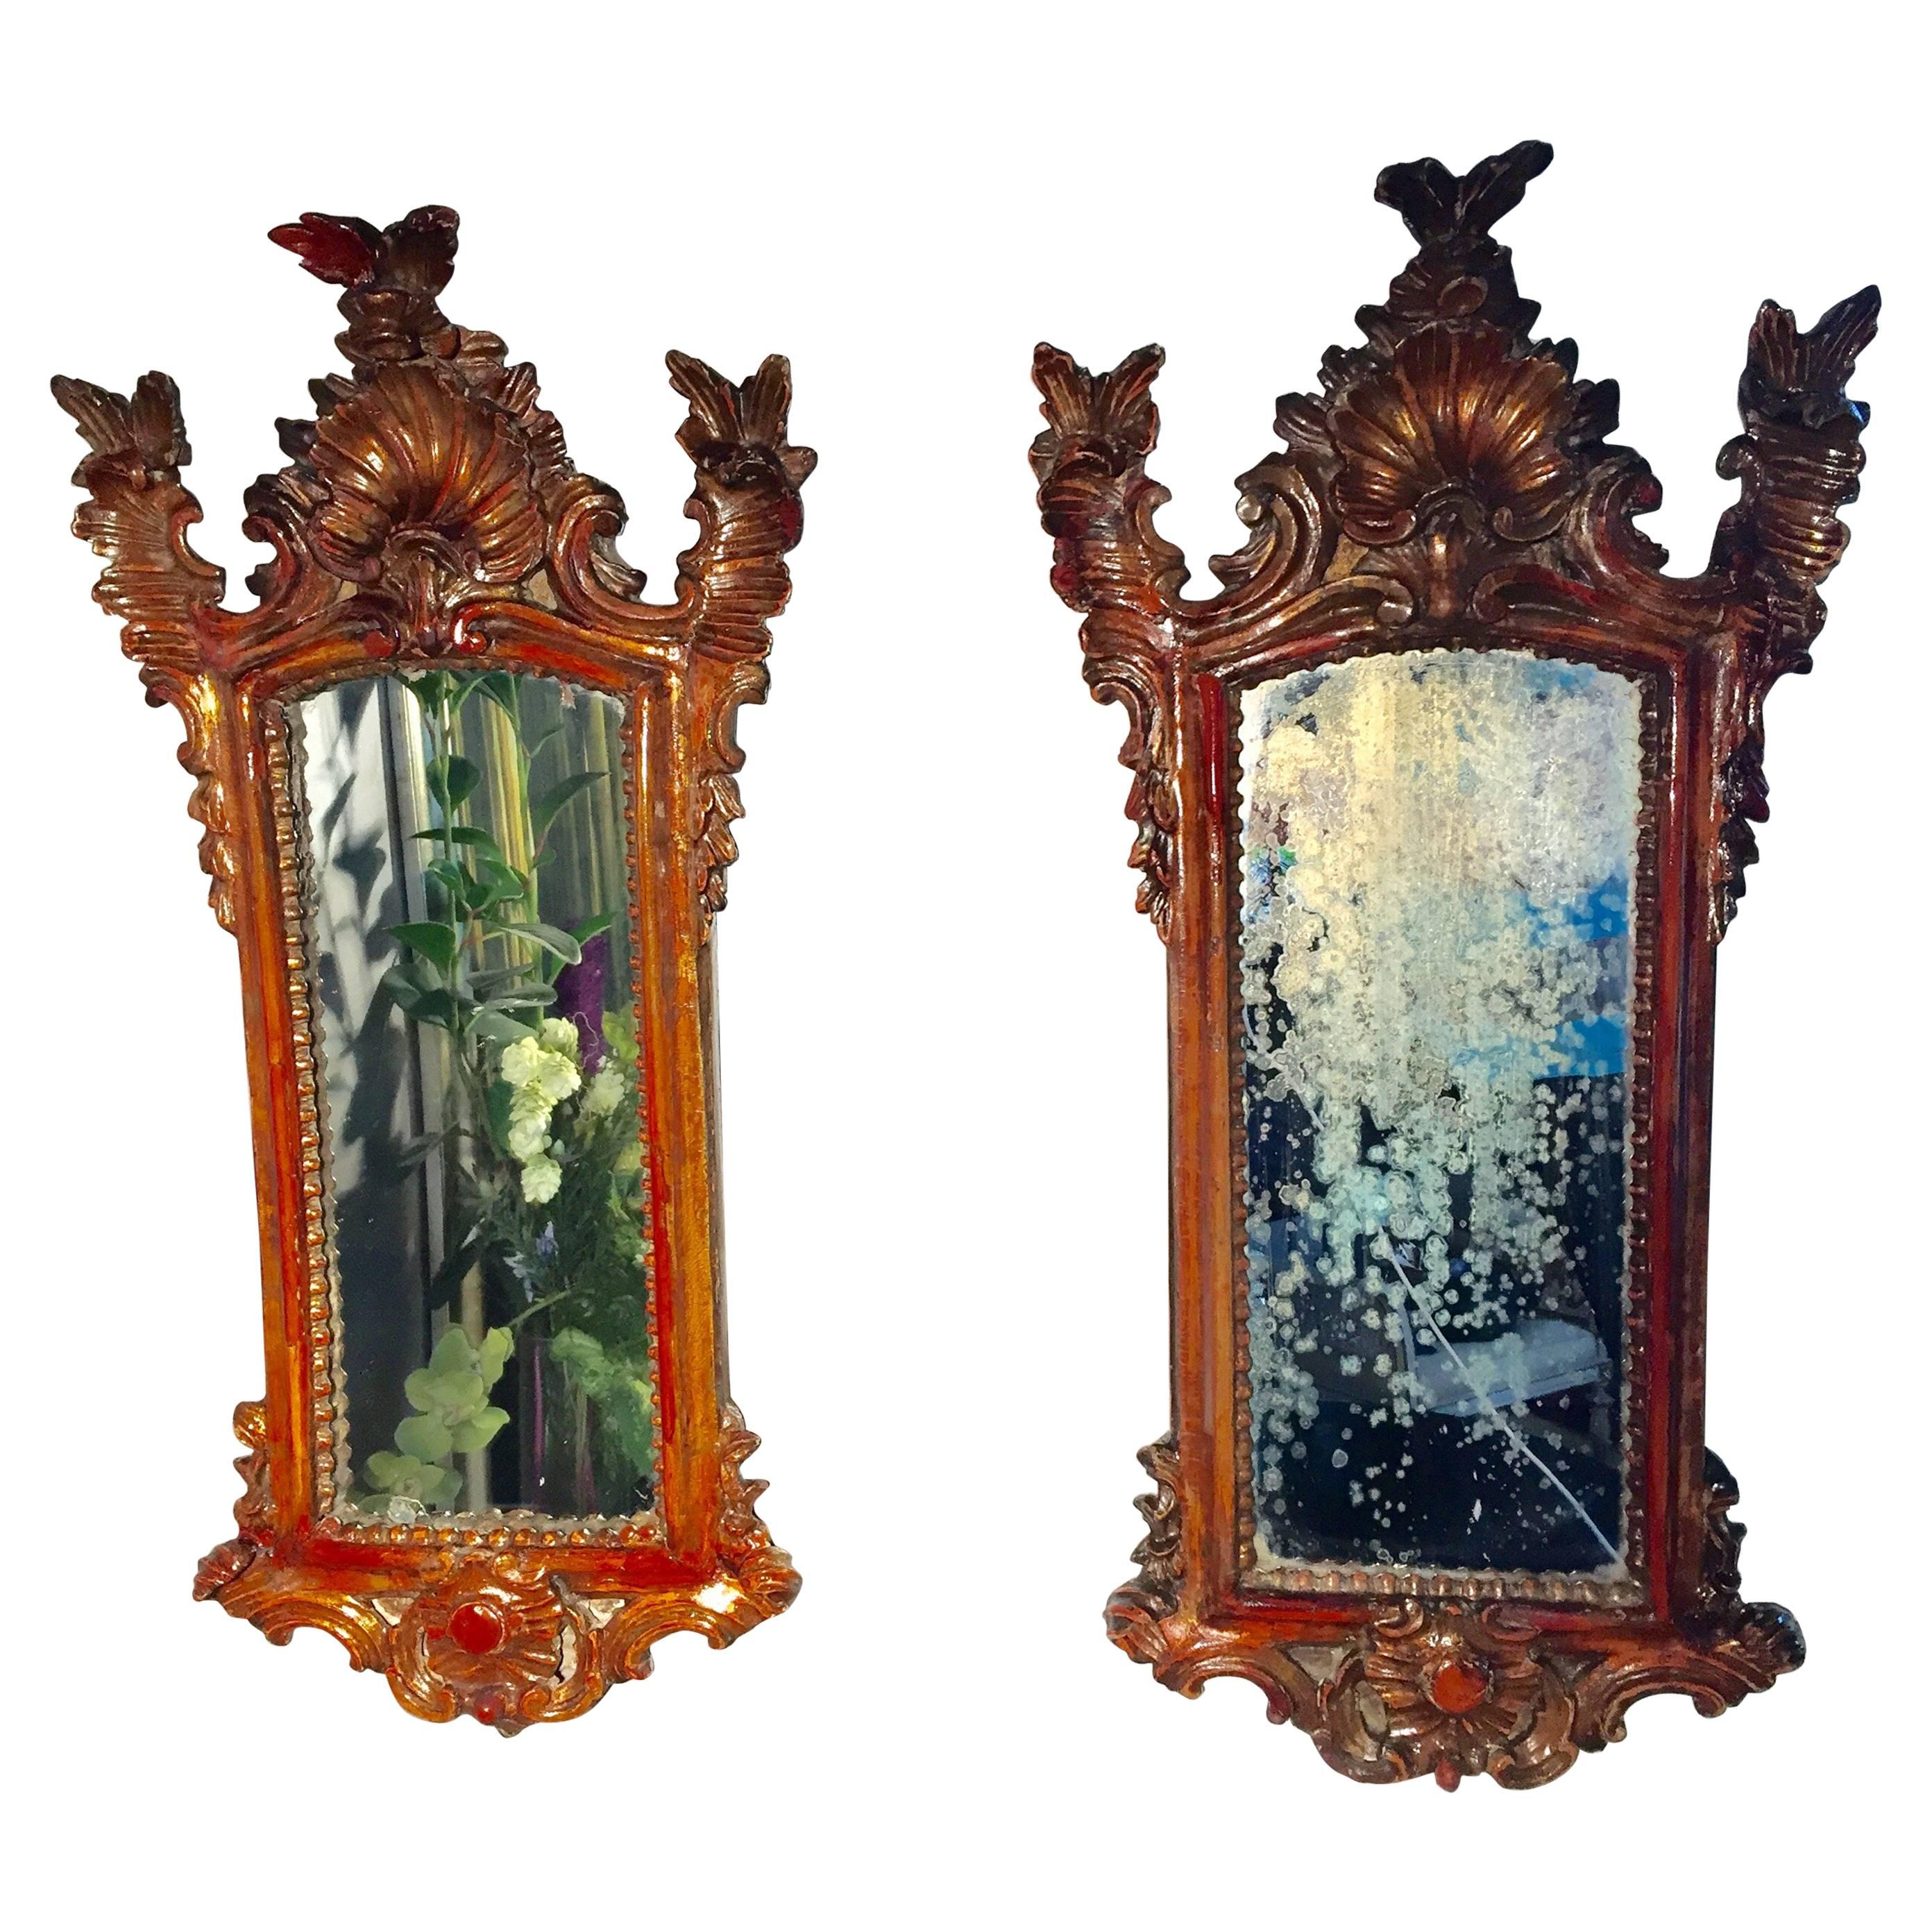 Paar barocke Spiegel aus der Zeit 